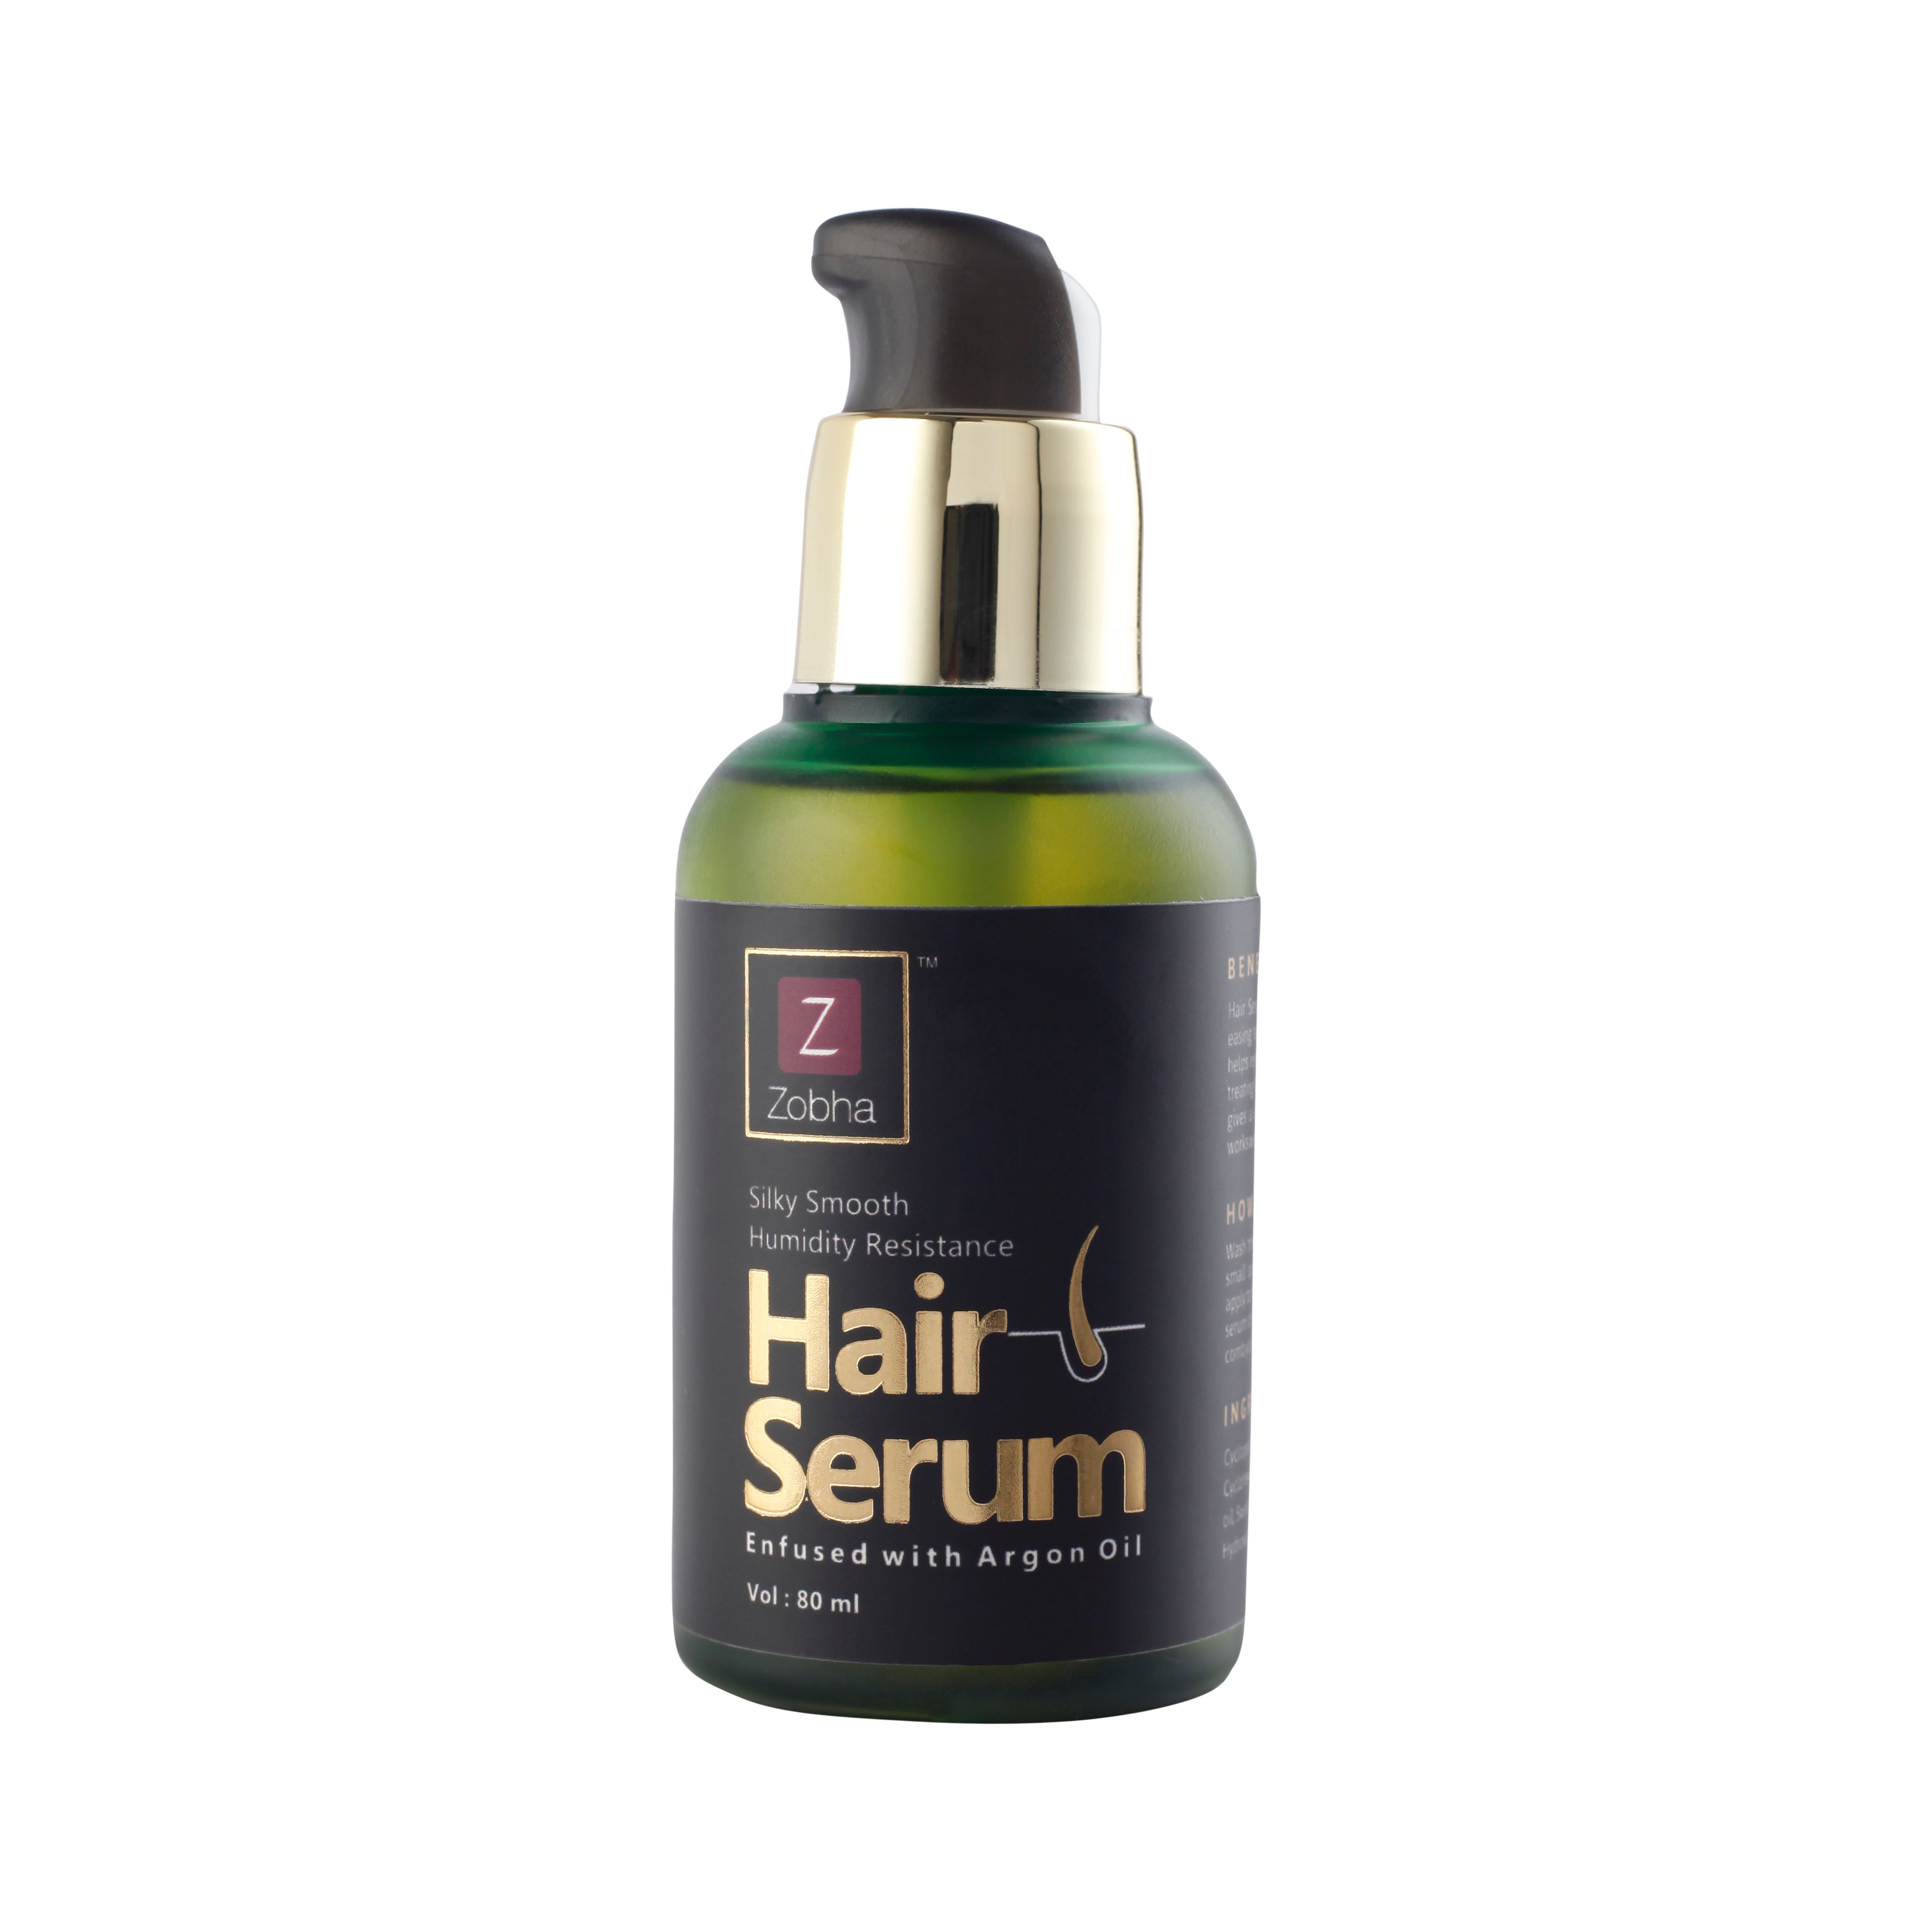 Argan Oil Hair Serum for Silky Smooth Hair